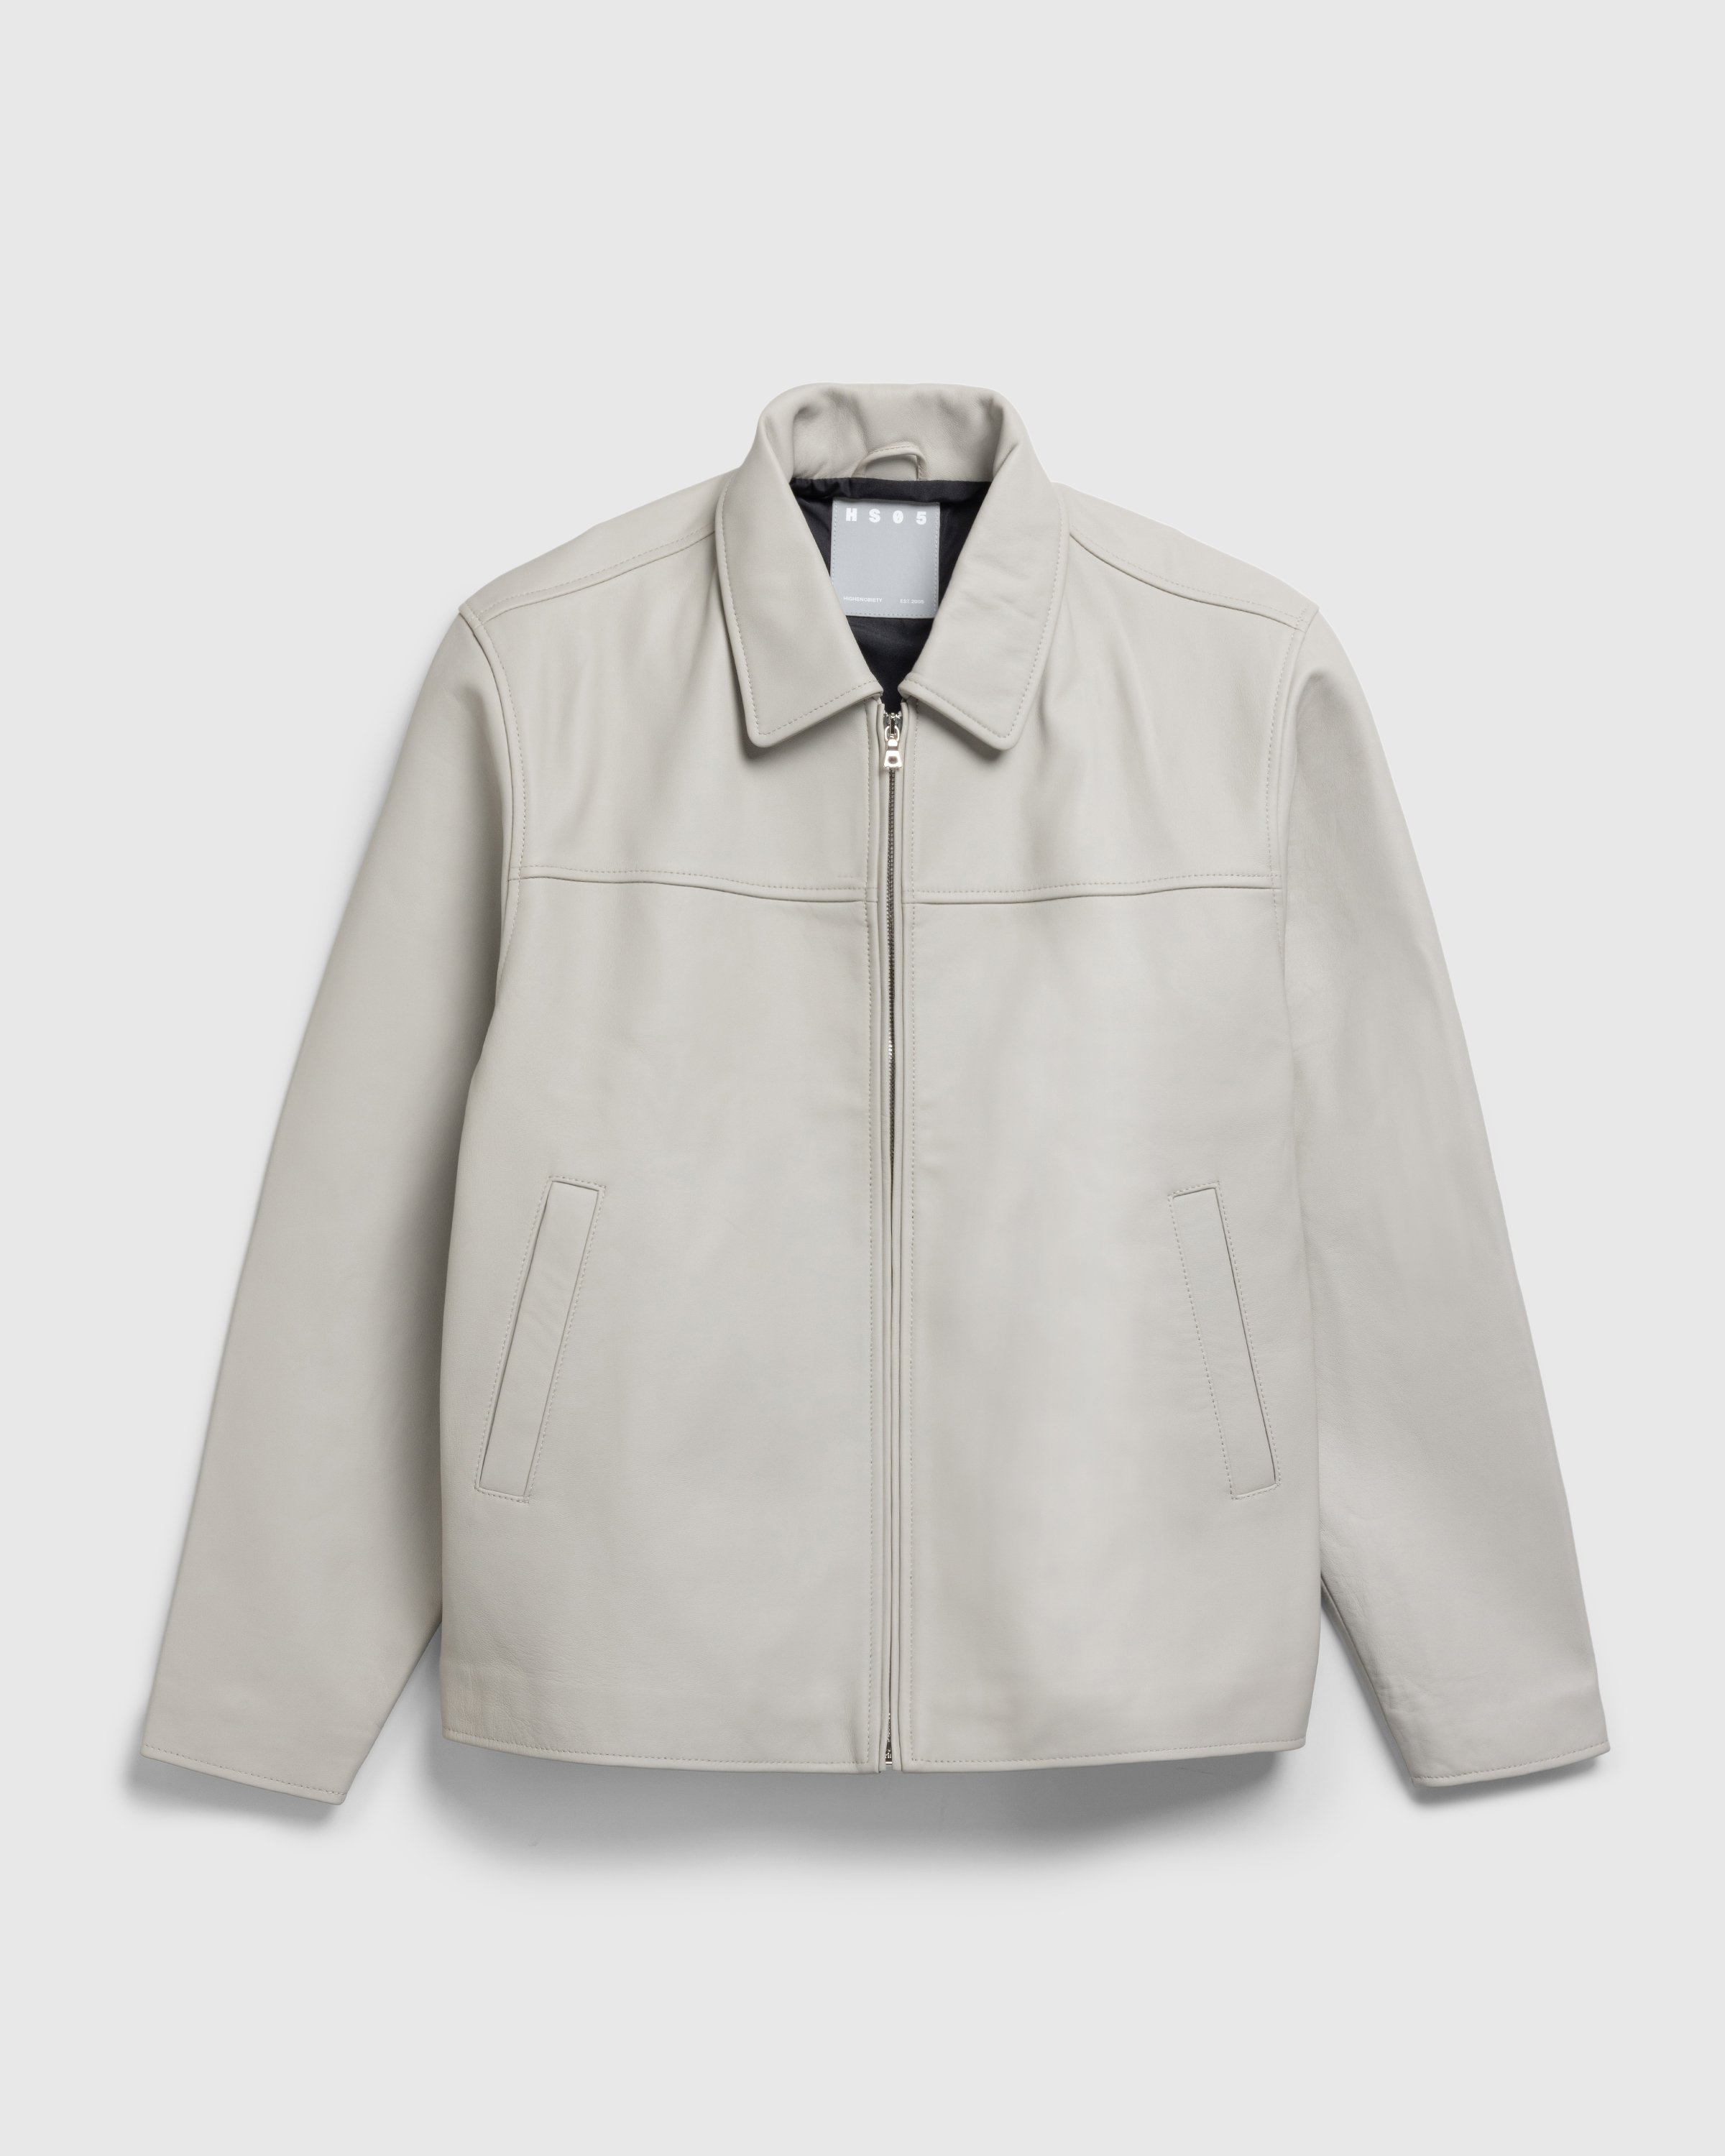 Highsnobiety HS05 - Leather Jacket - Clothing - Light Grey - Image 1